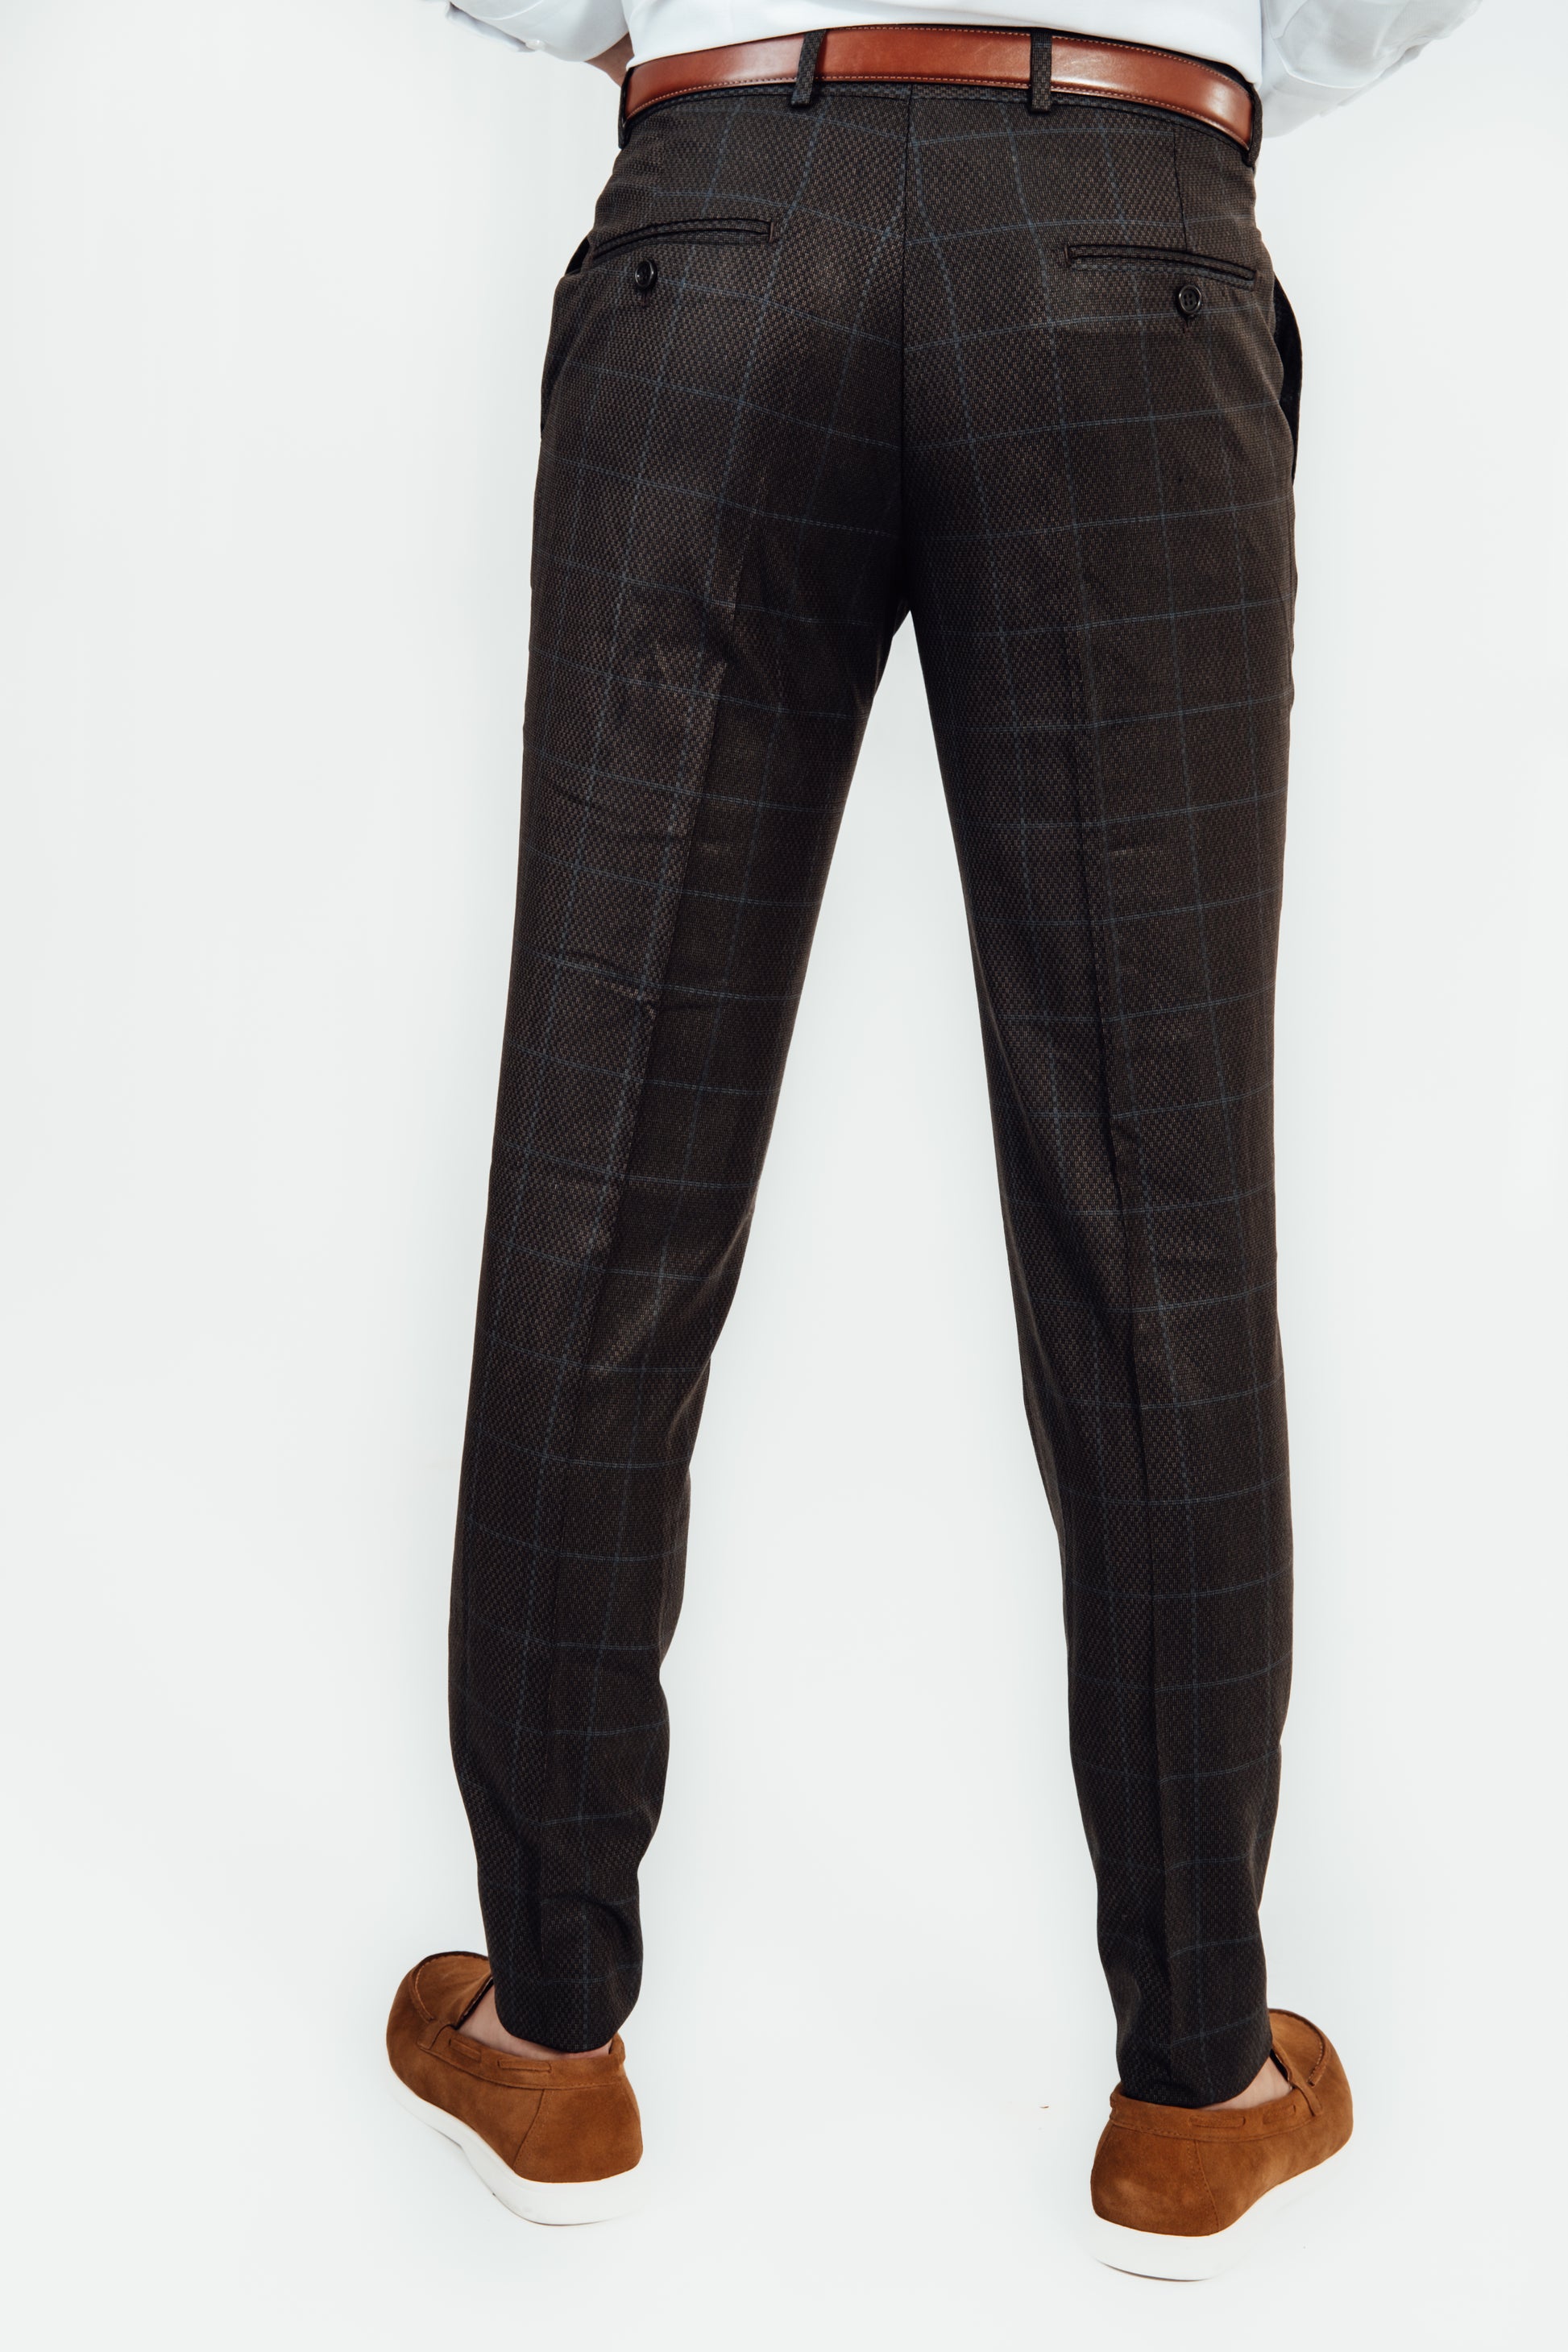 Achterkant van broek van man die donker bruin kostuum met ruit draagt van Suitify